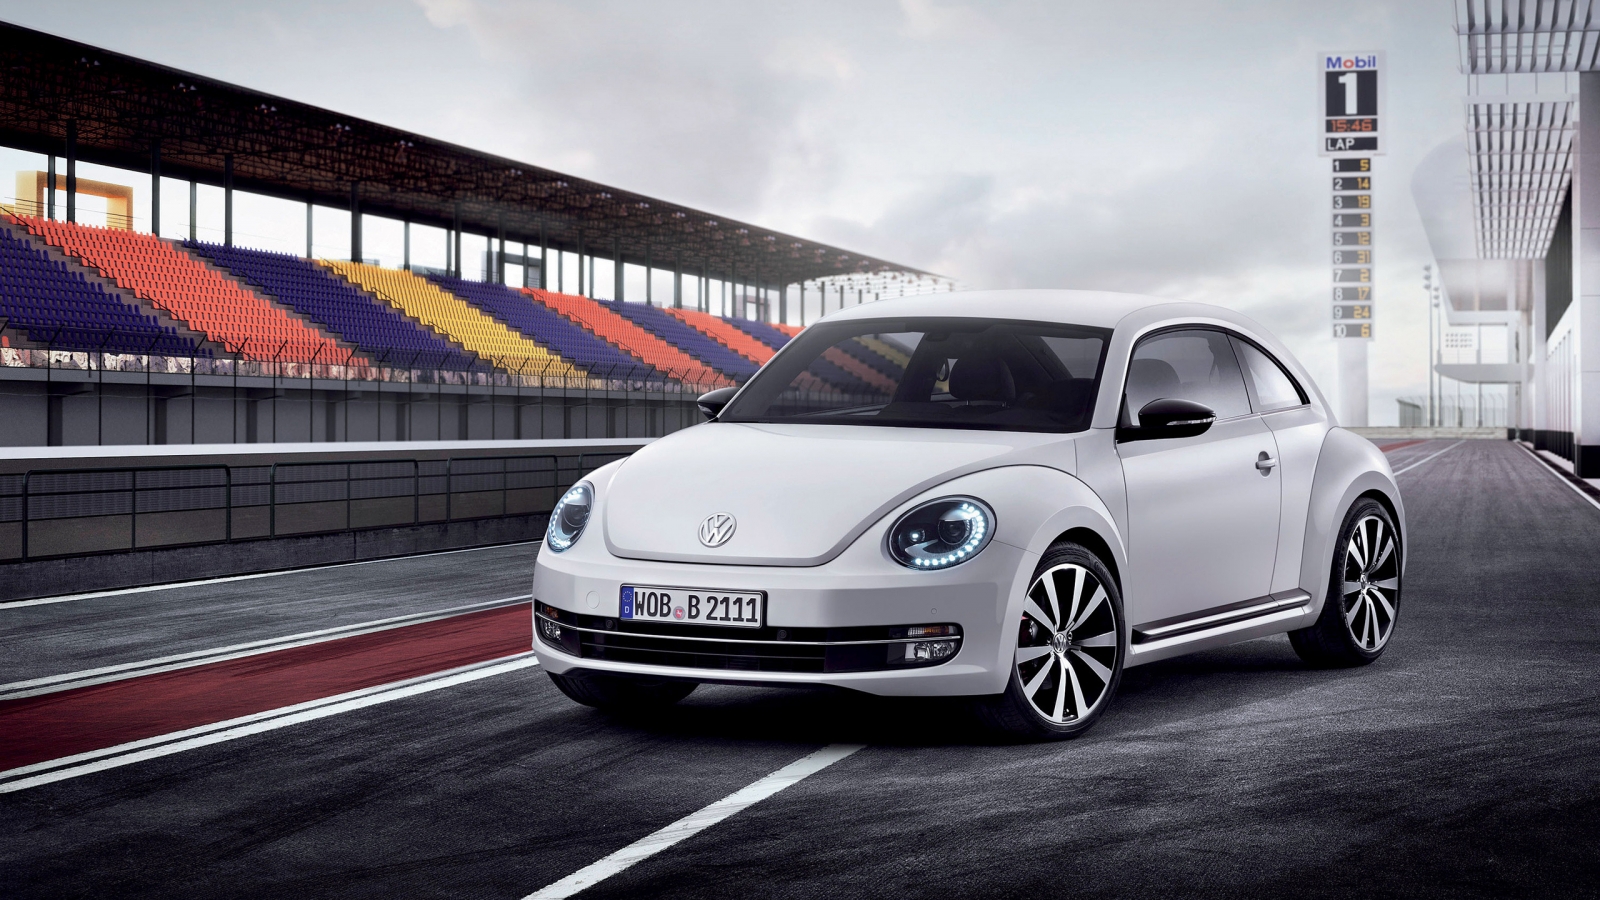 Volkswagen Beetle 2012 for 1600 x 900 HDTV resolution